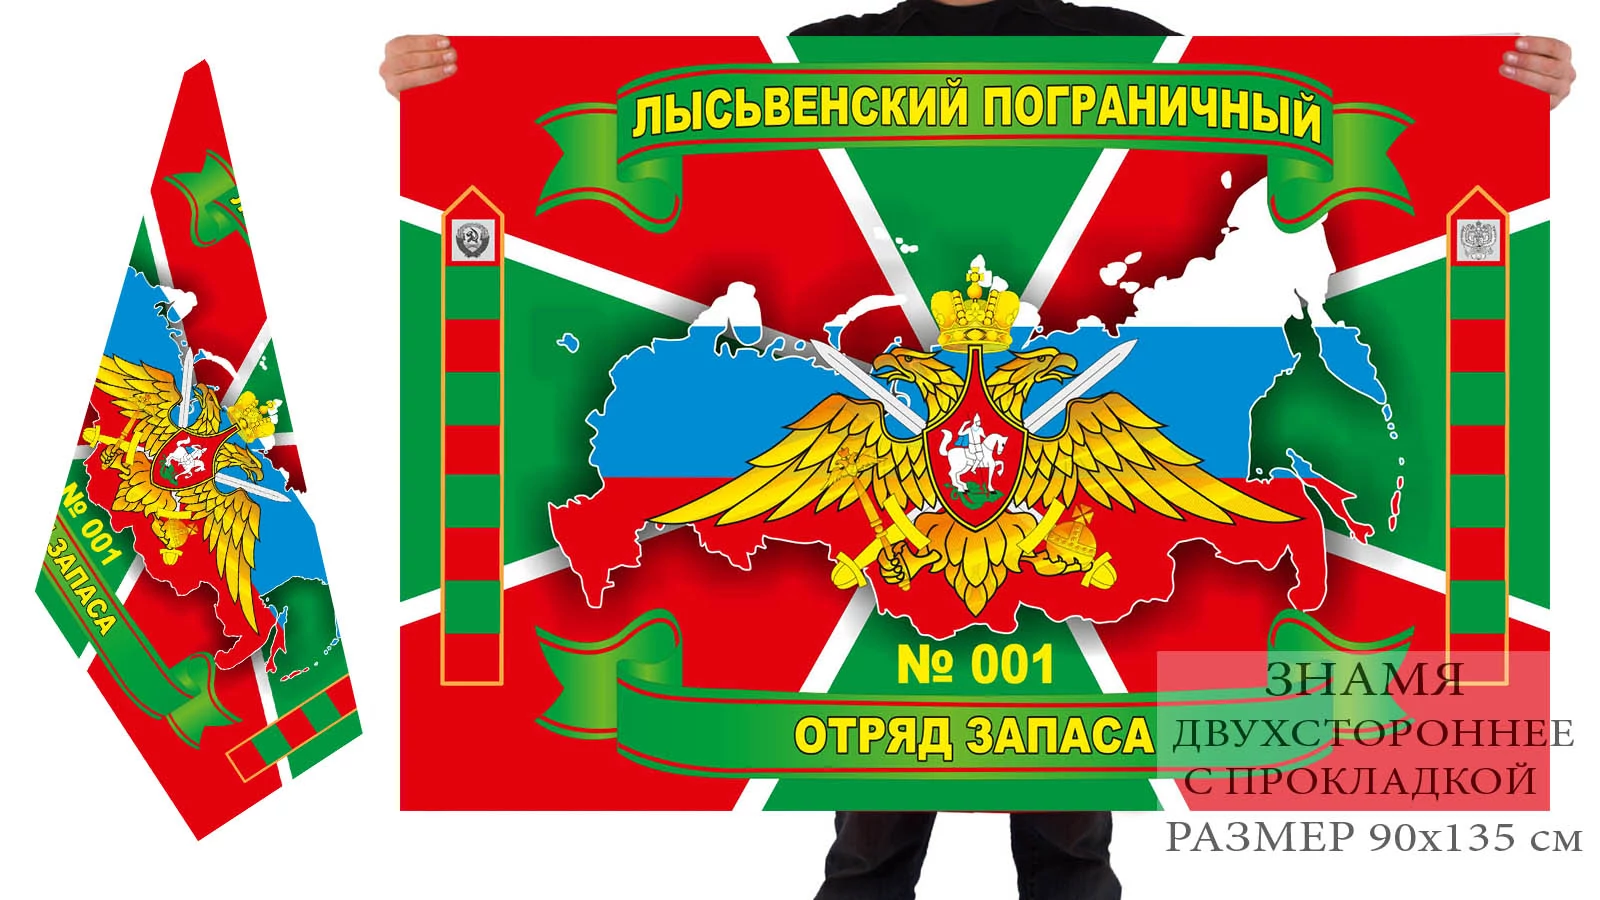 Двусторонний флаг Лысьвенского пограничного отряда запаса